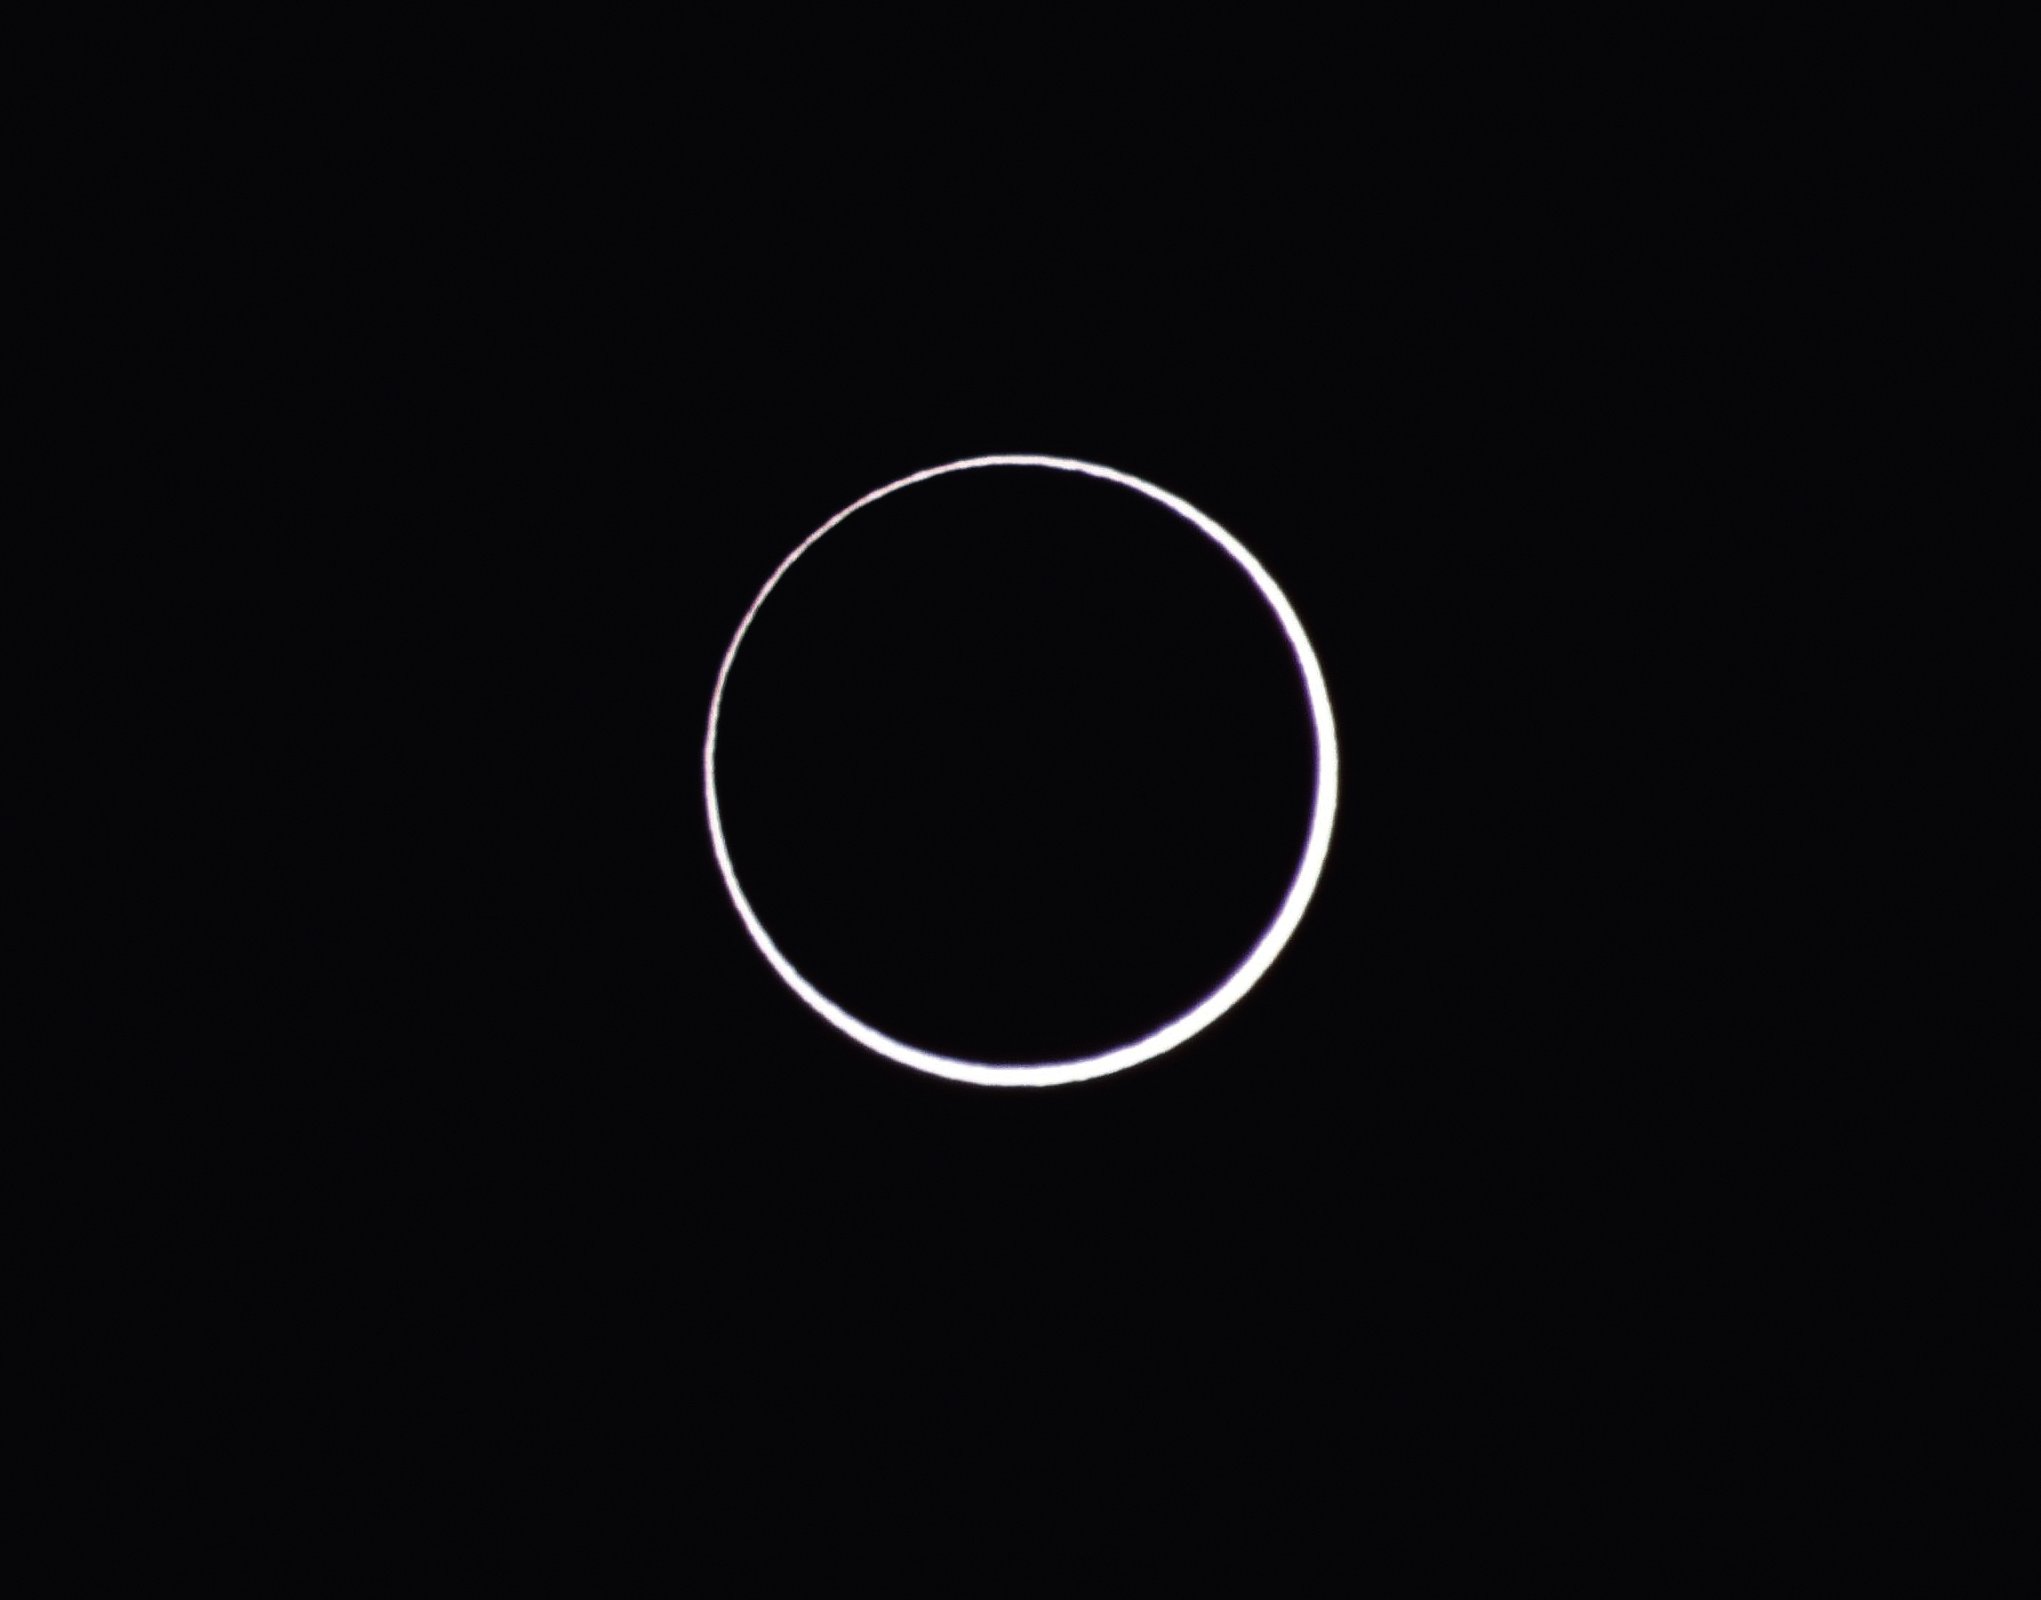 Ein heller Ring um einen dunklen Kreis: Es handelt sich um eine ringförmige Sonnenfinsternis